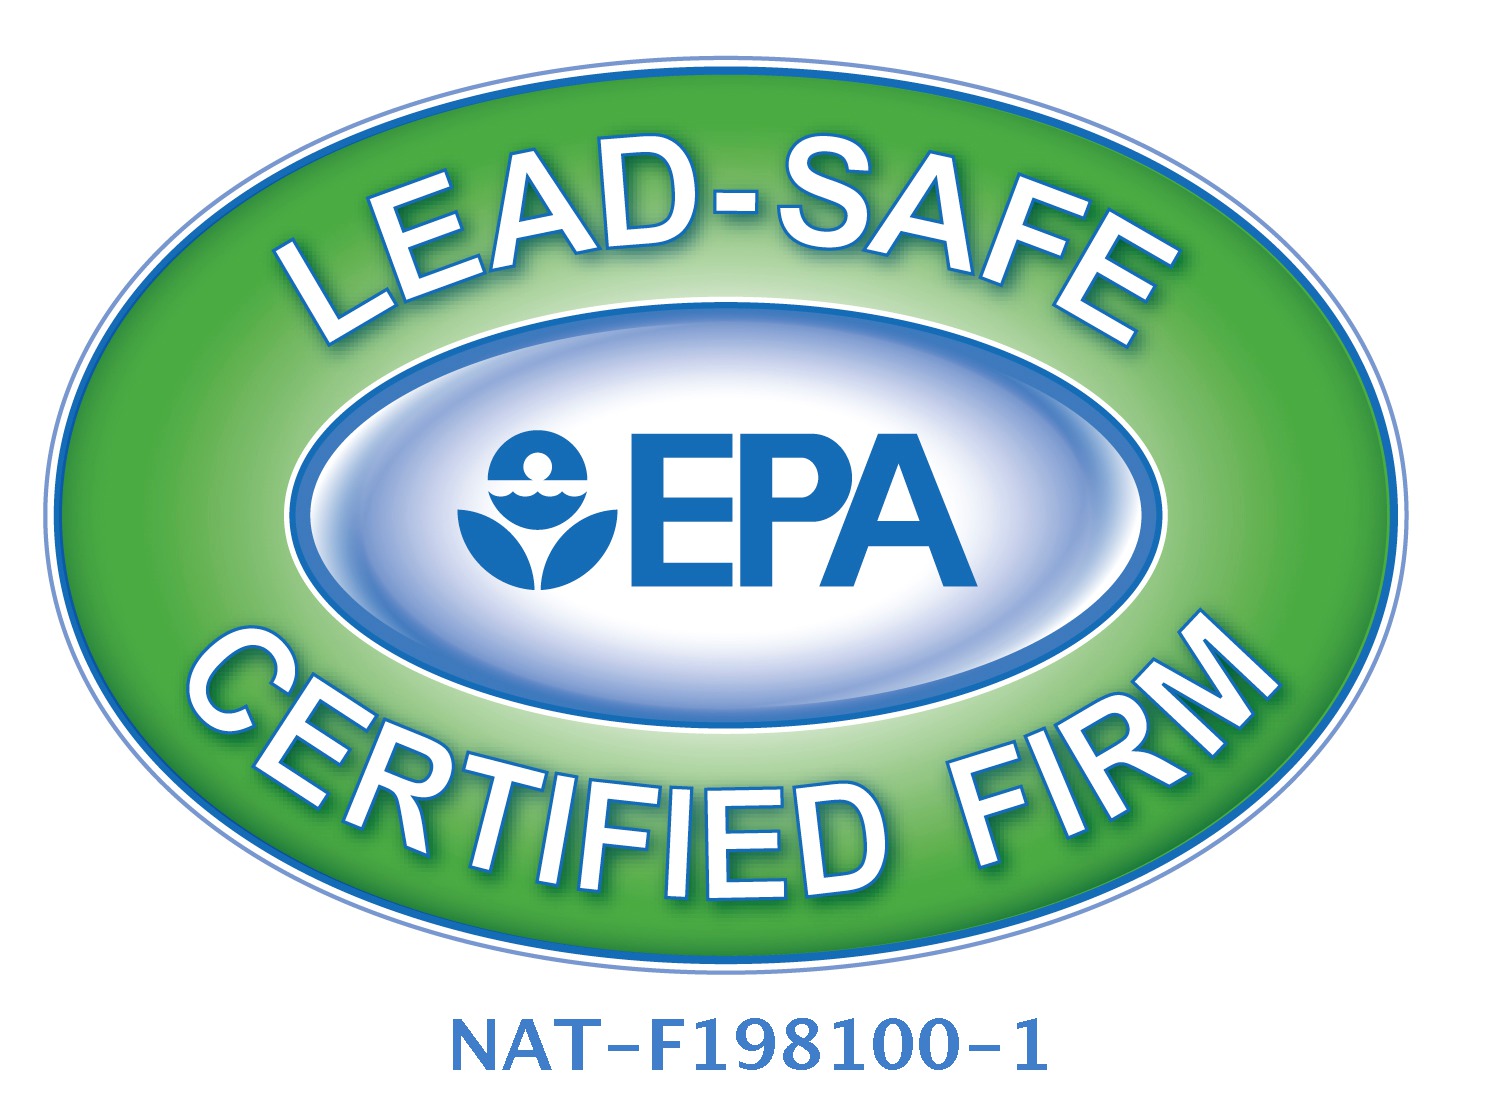 EPA Lead Sake Certified Firm